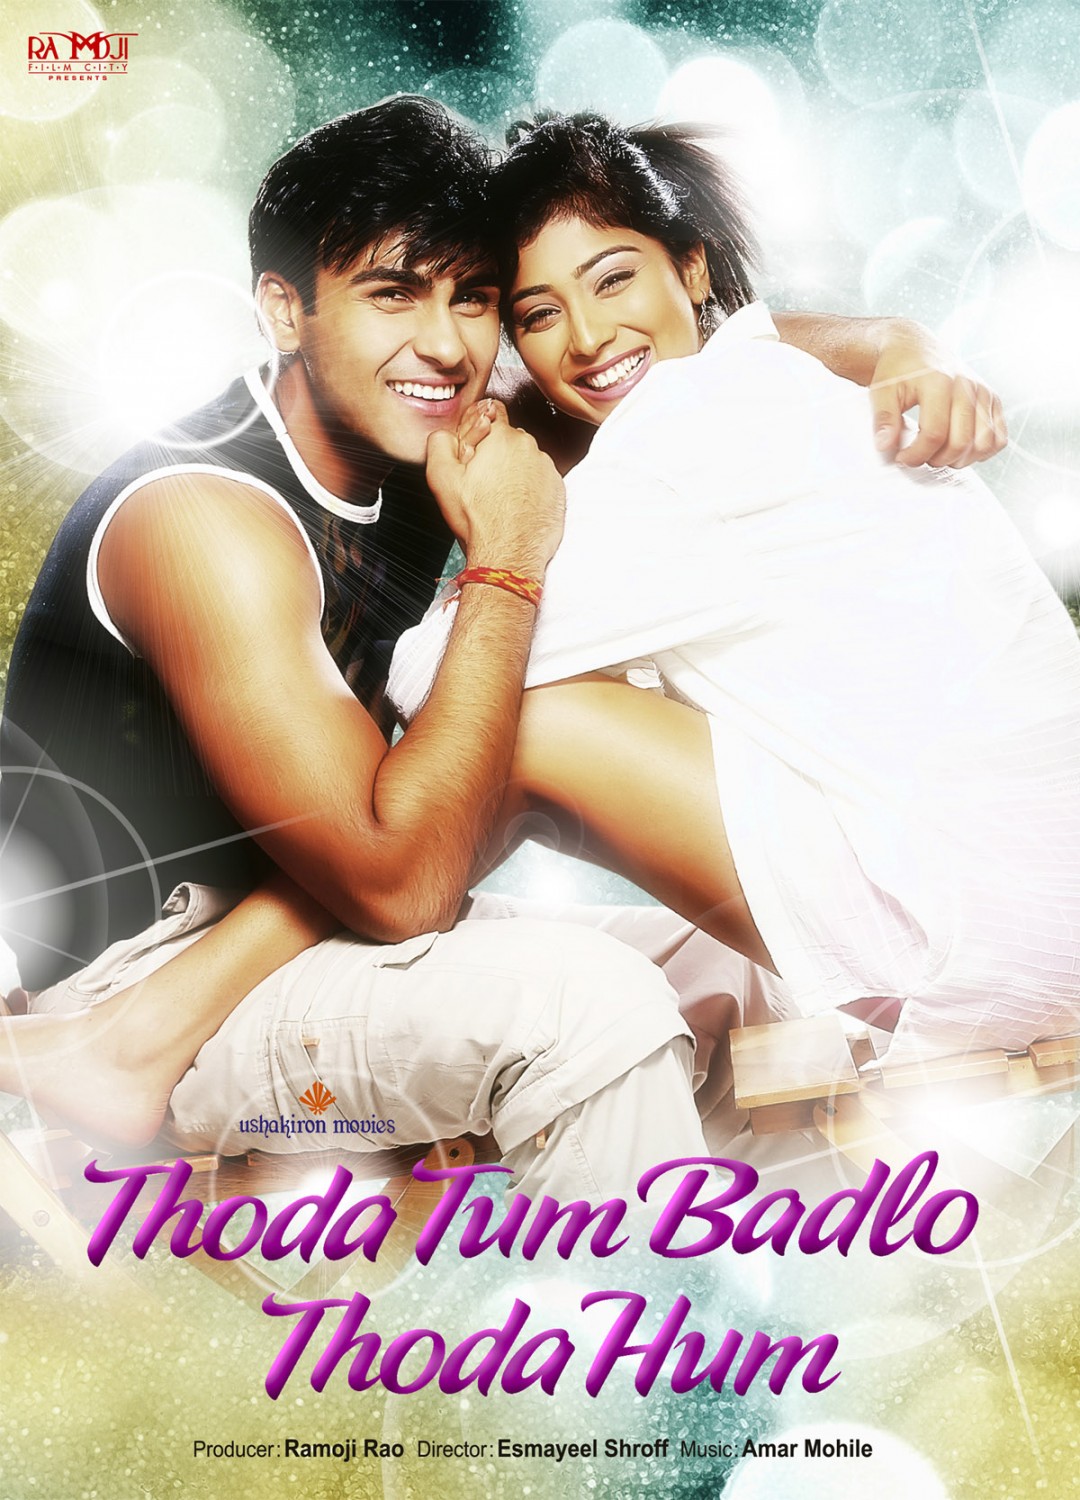 Extra Large Movie Poster Image for Thoda Tum Badlo Thoda Hum (#1 of 2)